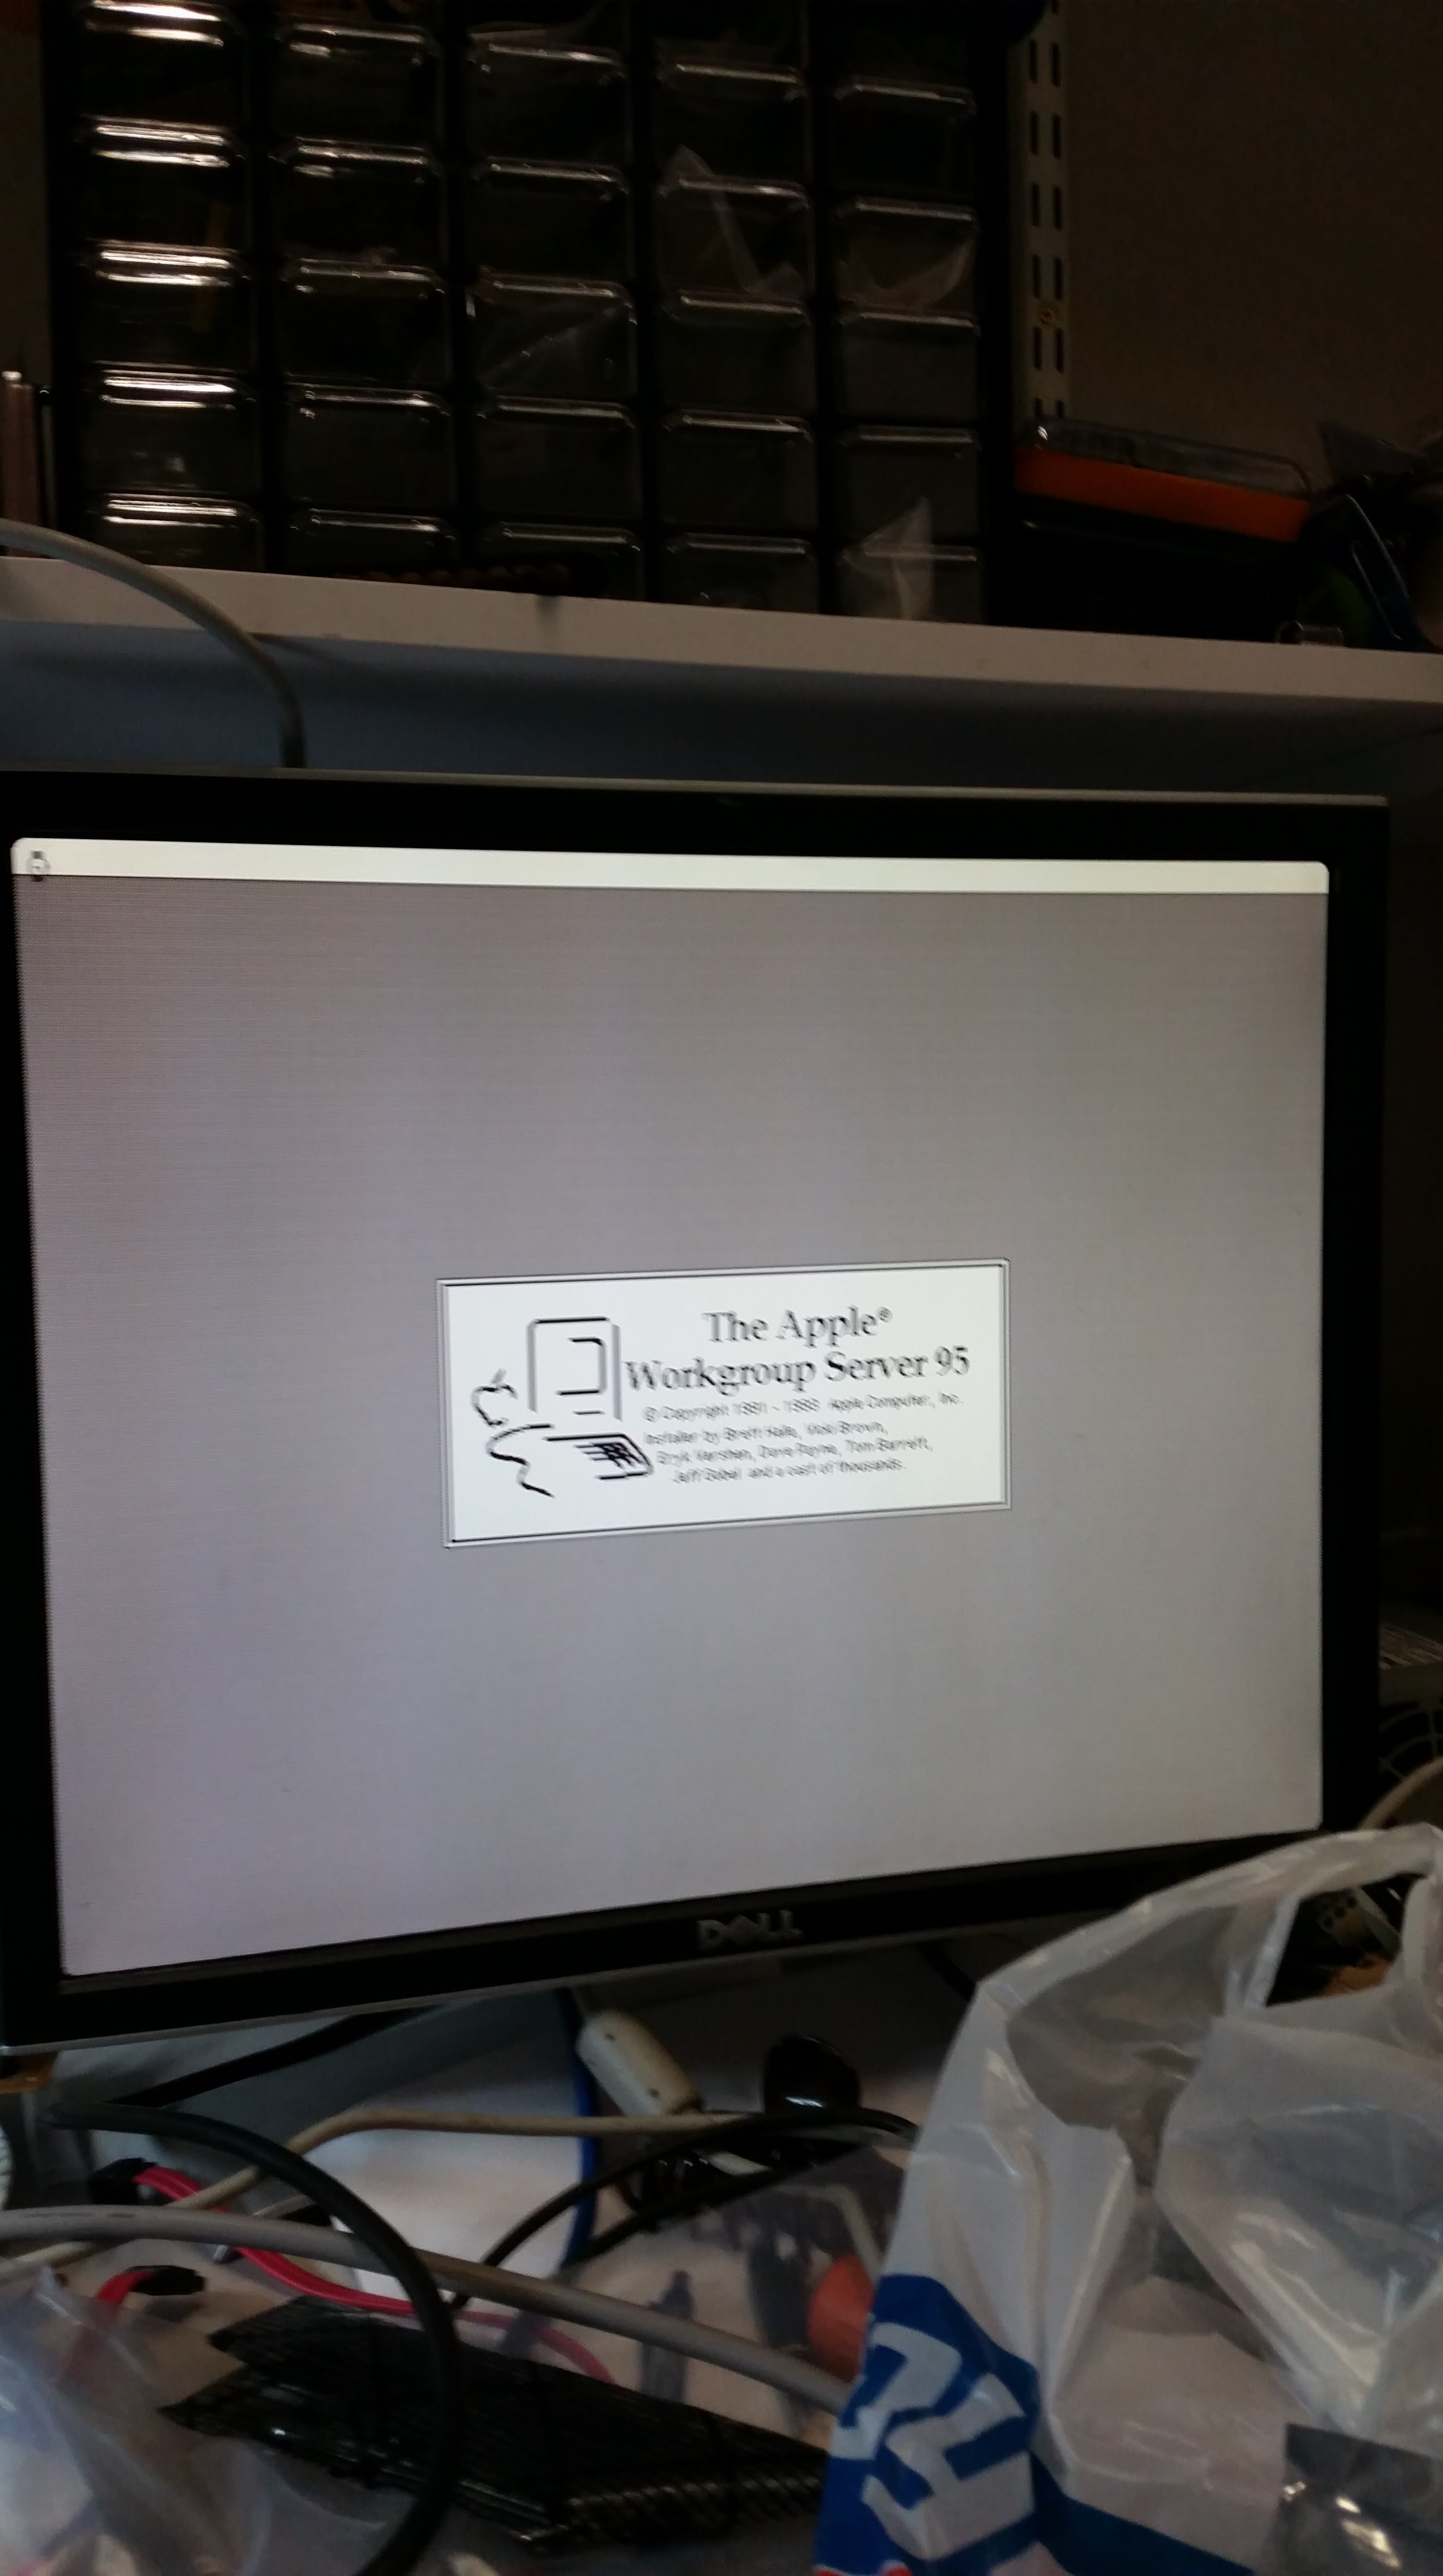 shoebill mac emulator